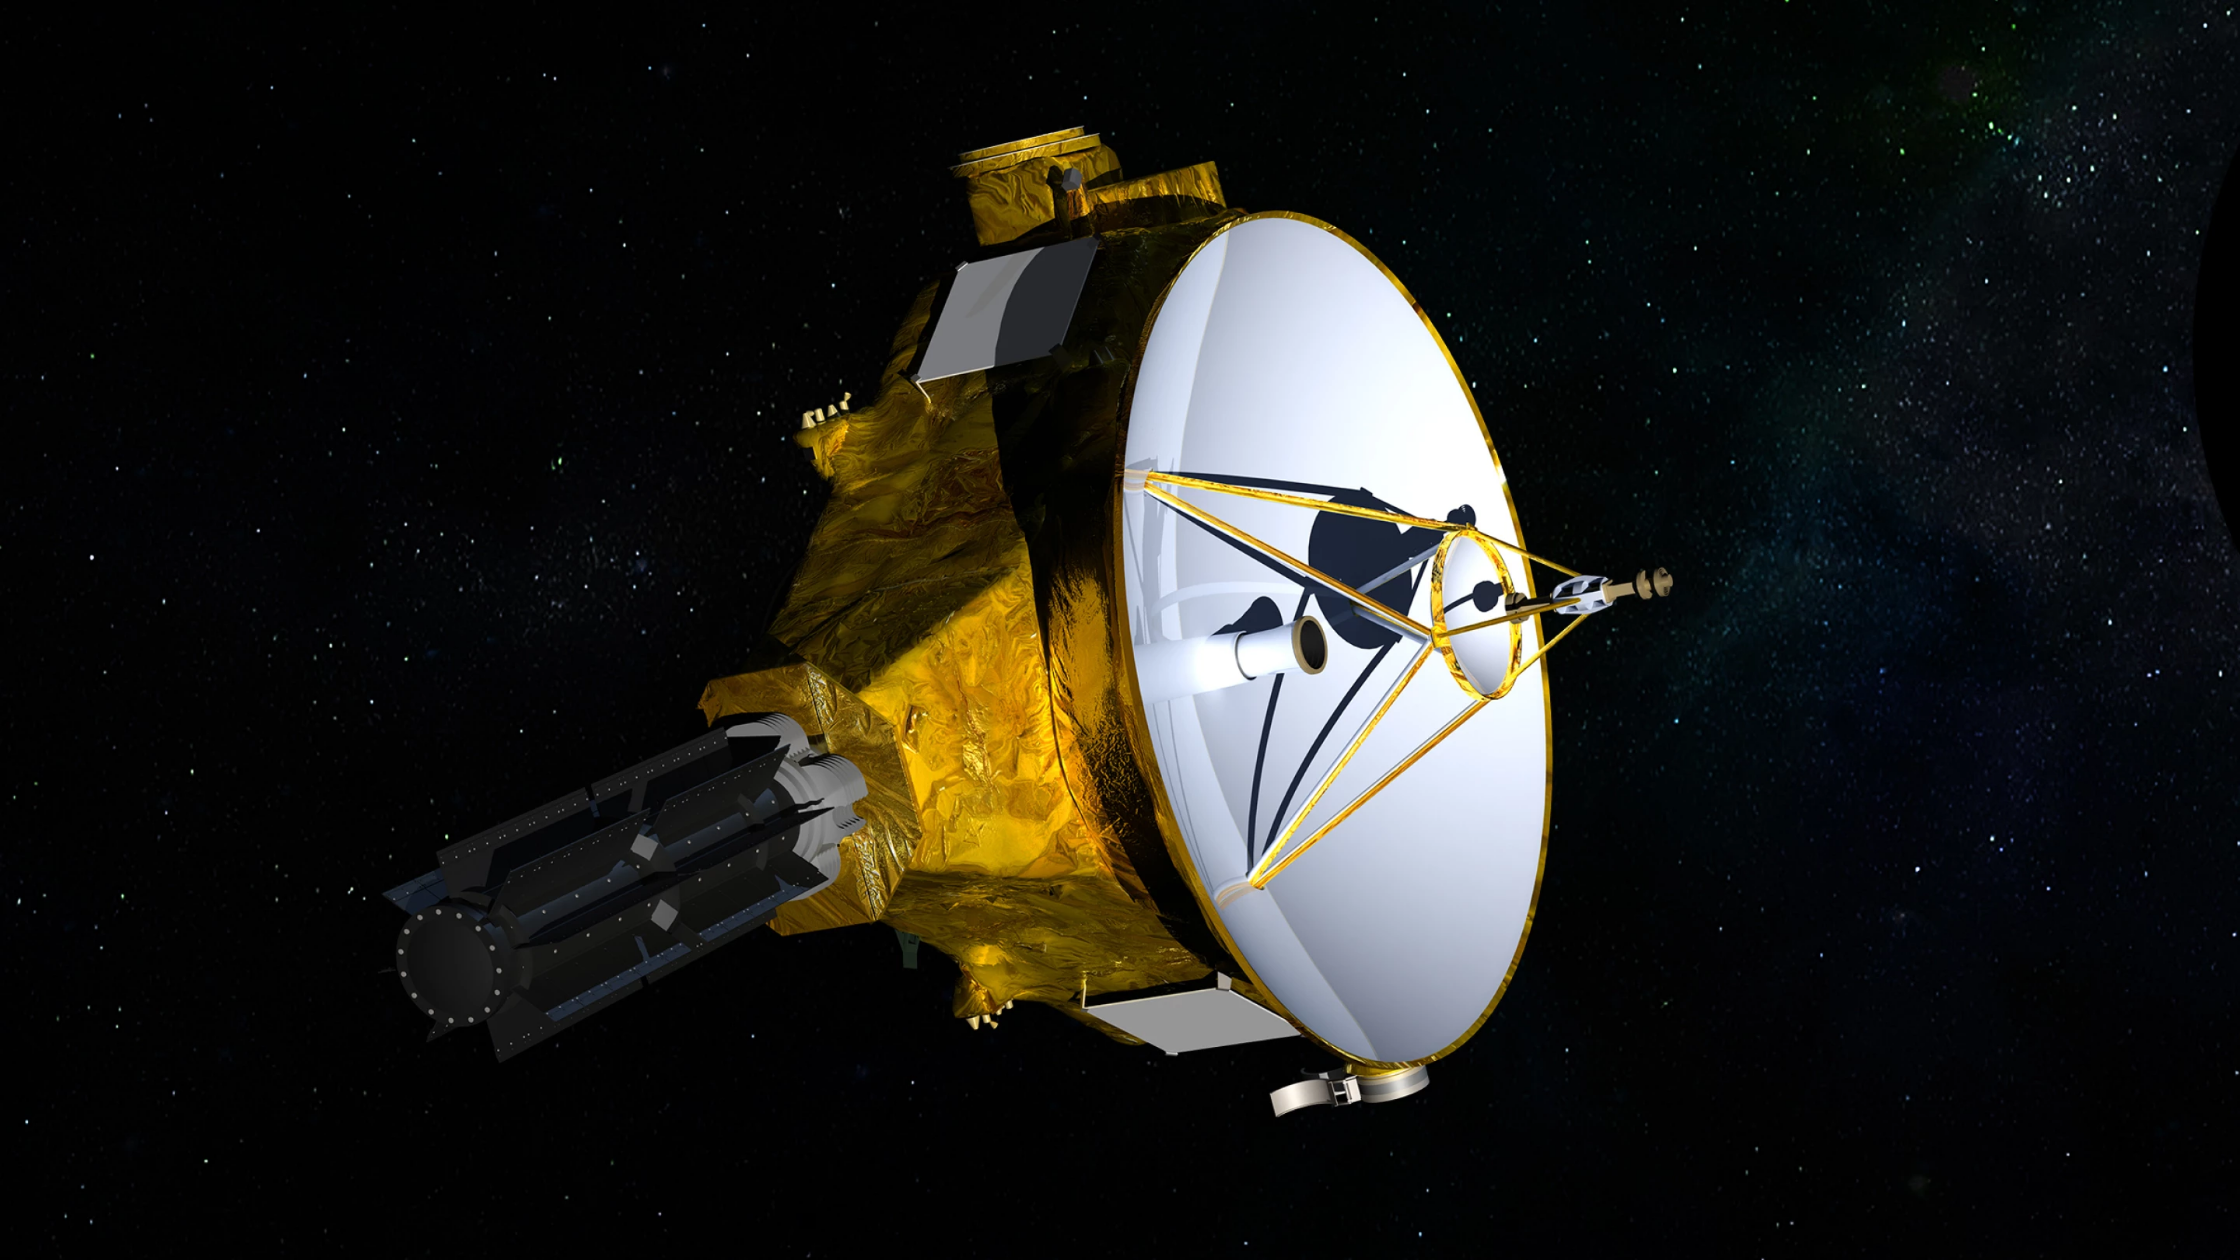 “新视野号”探测器拍下180亿公里外的“旅行者1号”照片